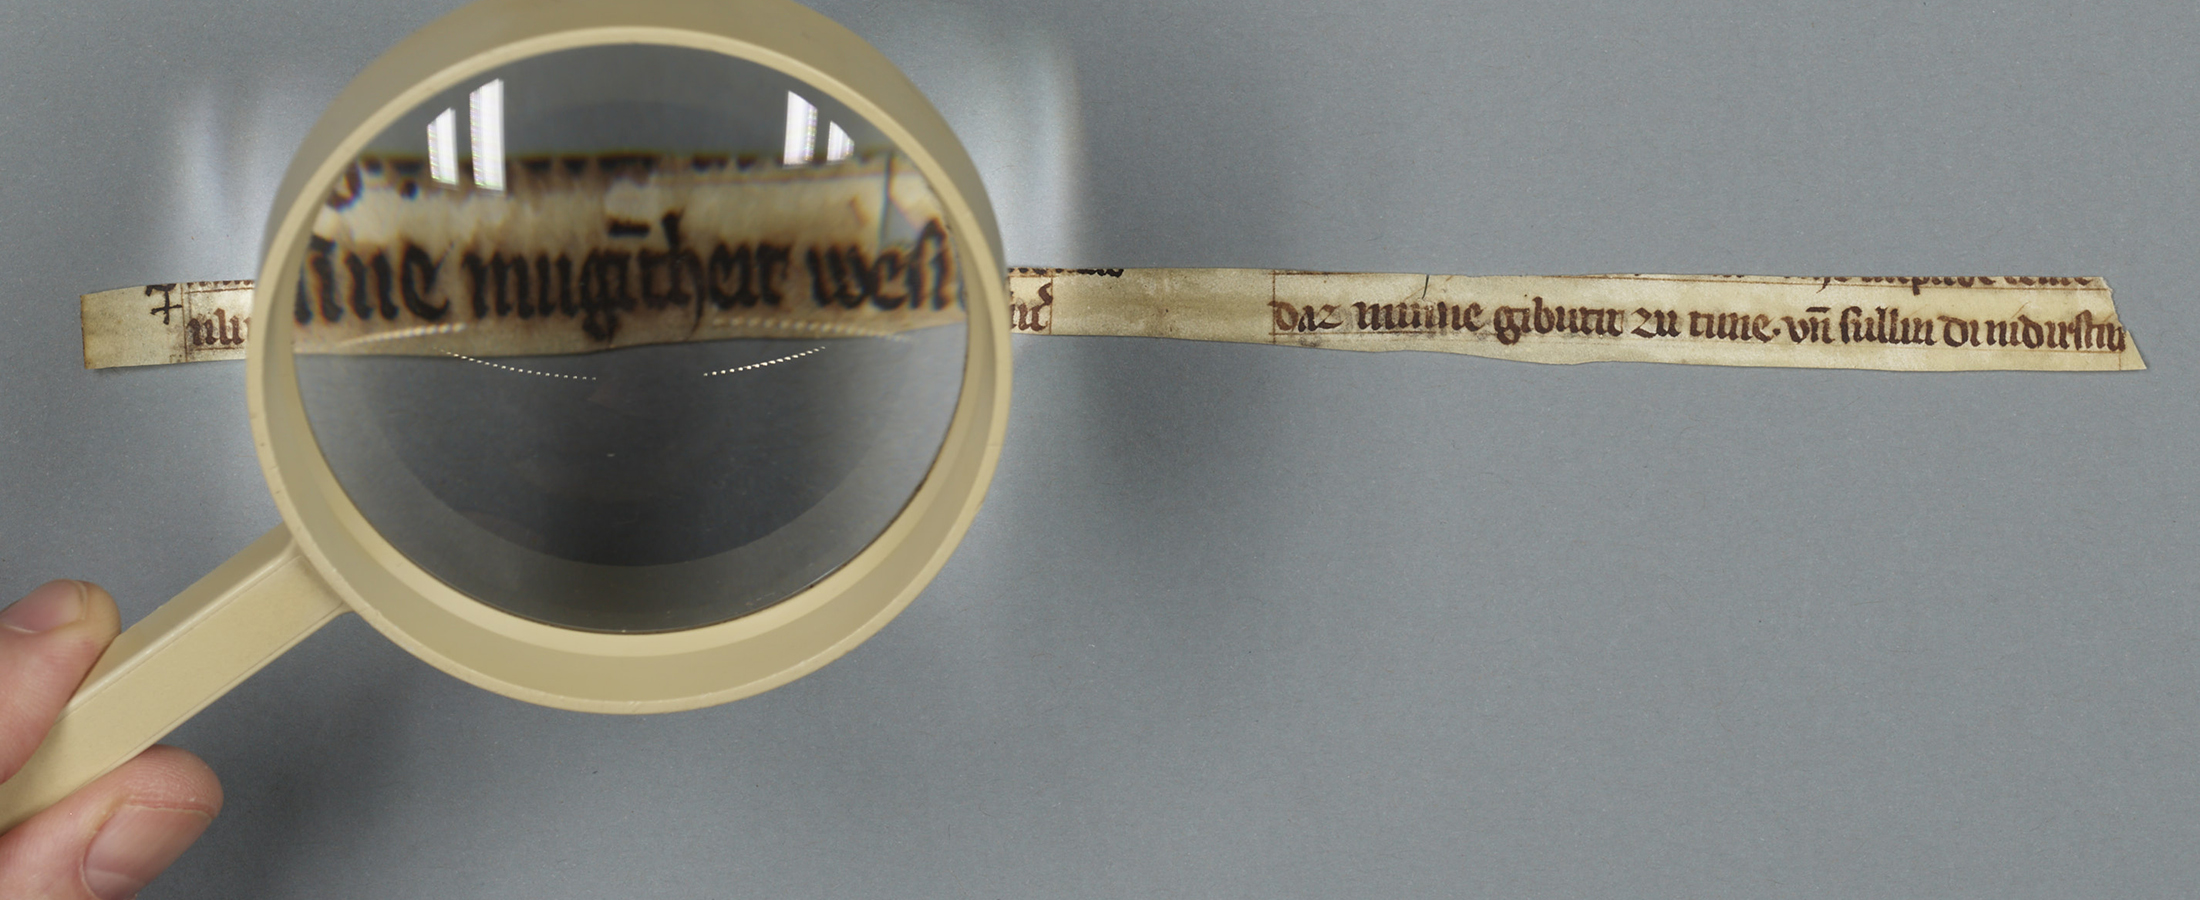 Sensationeller Fund an der Universitätsbibliothek Leipzig: Ältestes Zeugnis von Meister Eckharts Werk entdeckt